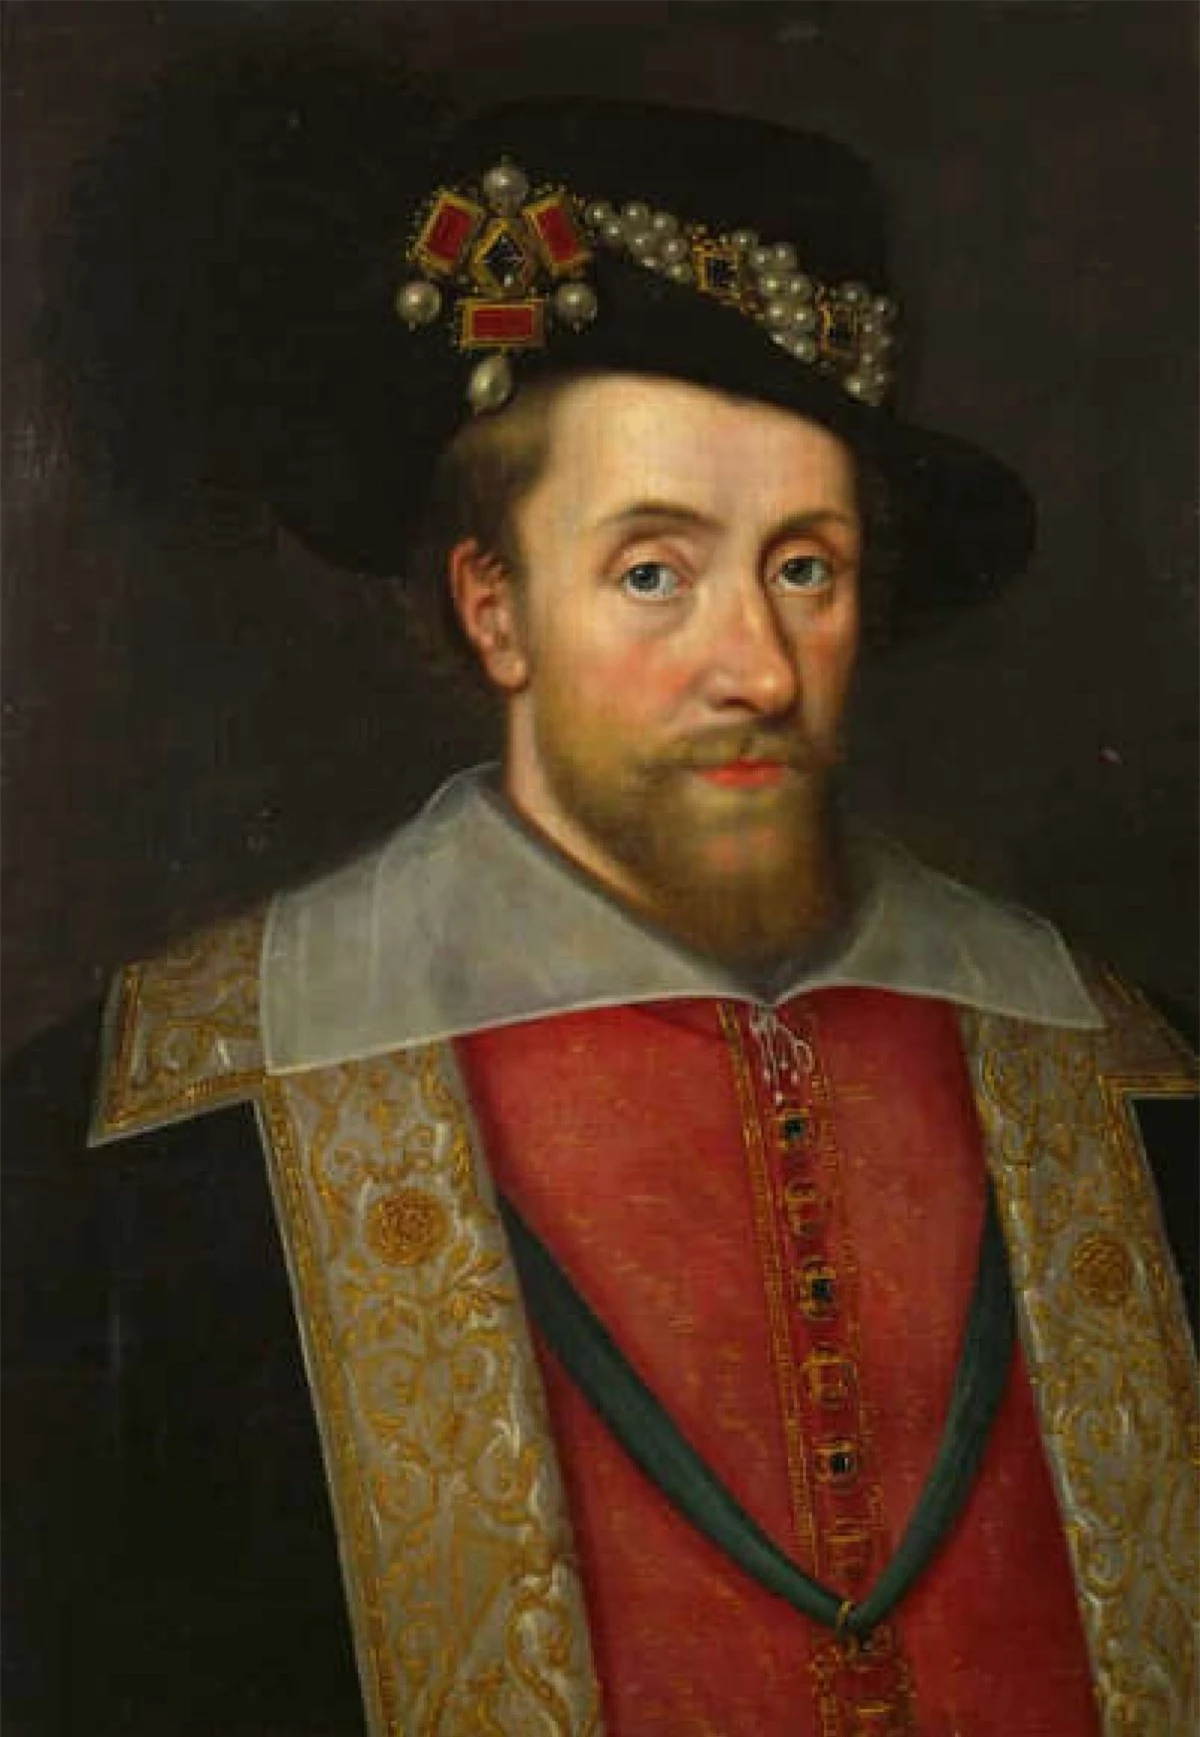 James IV lên ngôi vua của Scotland năm 1567, sau khi mẹ ông thoái vị. Sau đó ông trở thành Vua James I của Anh, sau khi Nữ hoàng Elizabeth I qua đời. Vua James IV và I đã trị vì tổng cộng 57 năm.